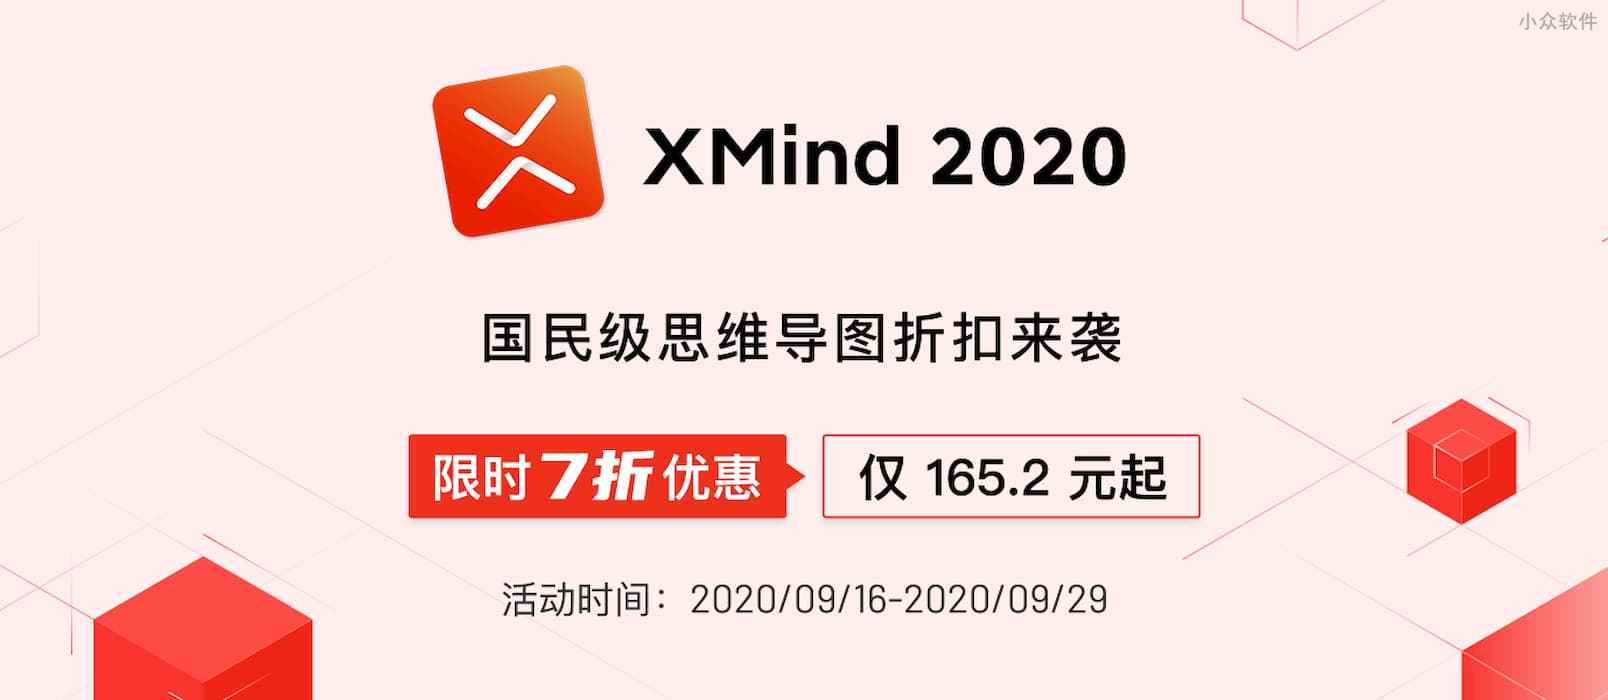 XMind 2020 限时 7 折特价优惠，难得一遇，最低仅需 165.2 元起